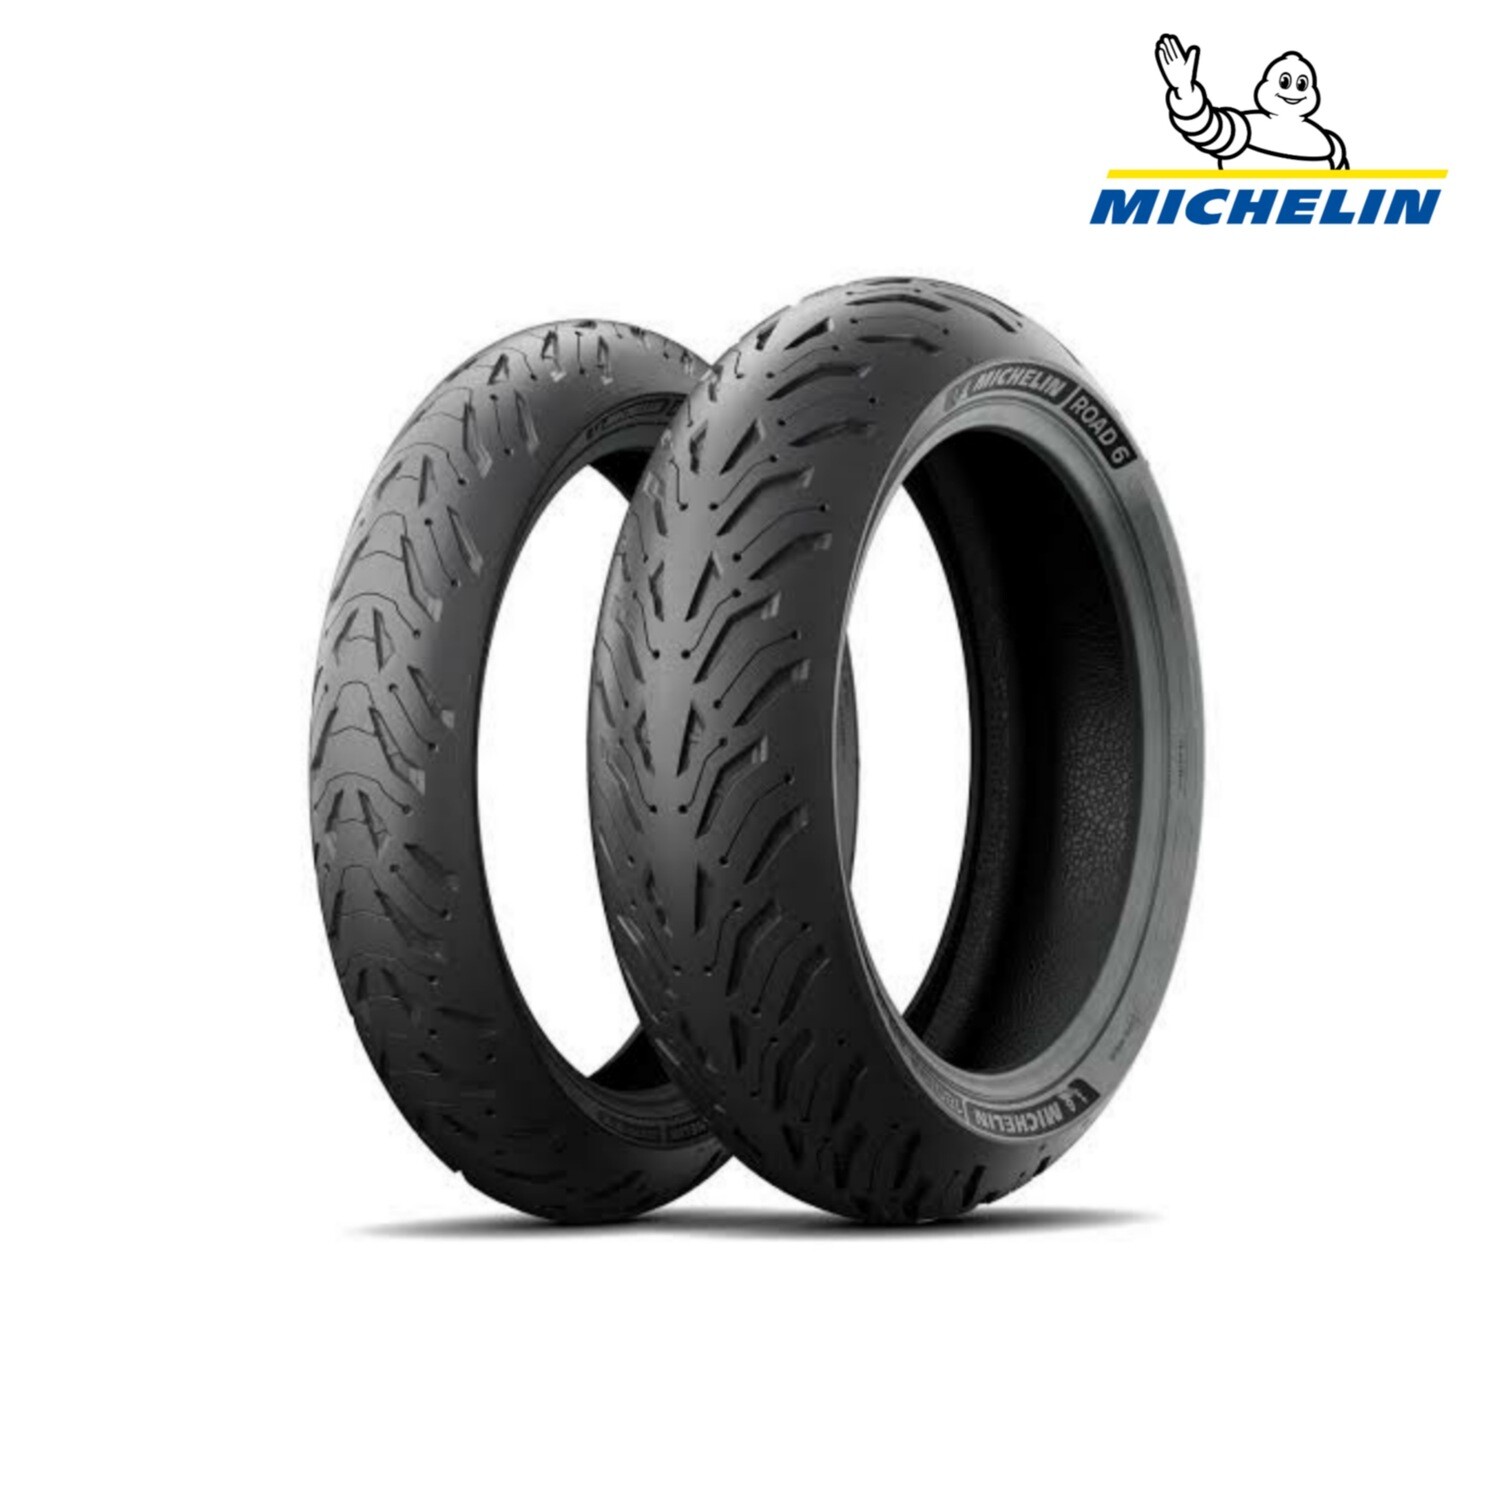 MICHELIN ROAD 6 180/55ZR17 Tubeless 73 W RearTwo-Wheeler Tyre